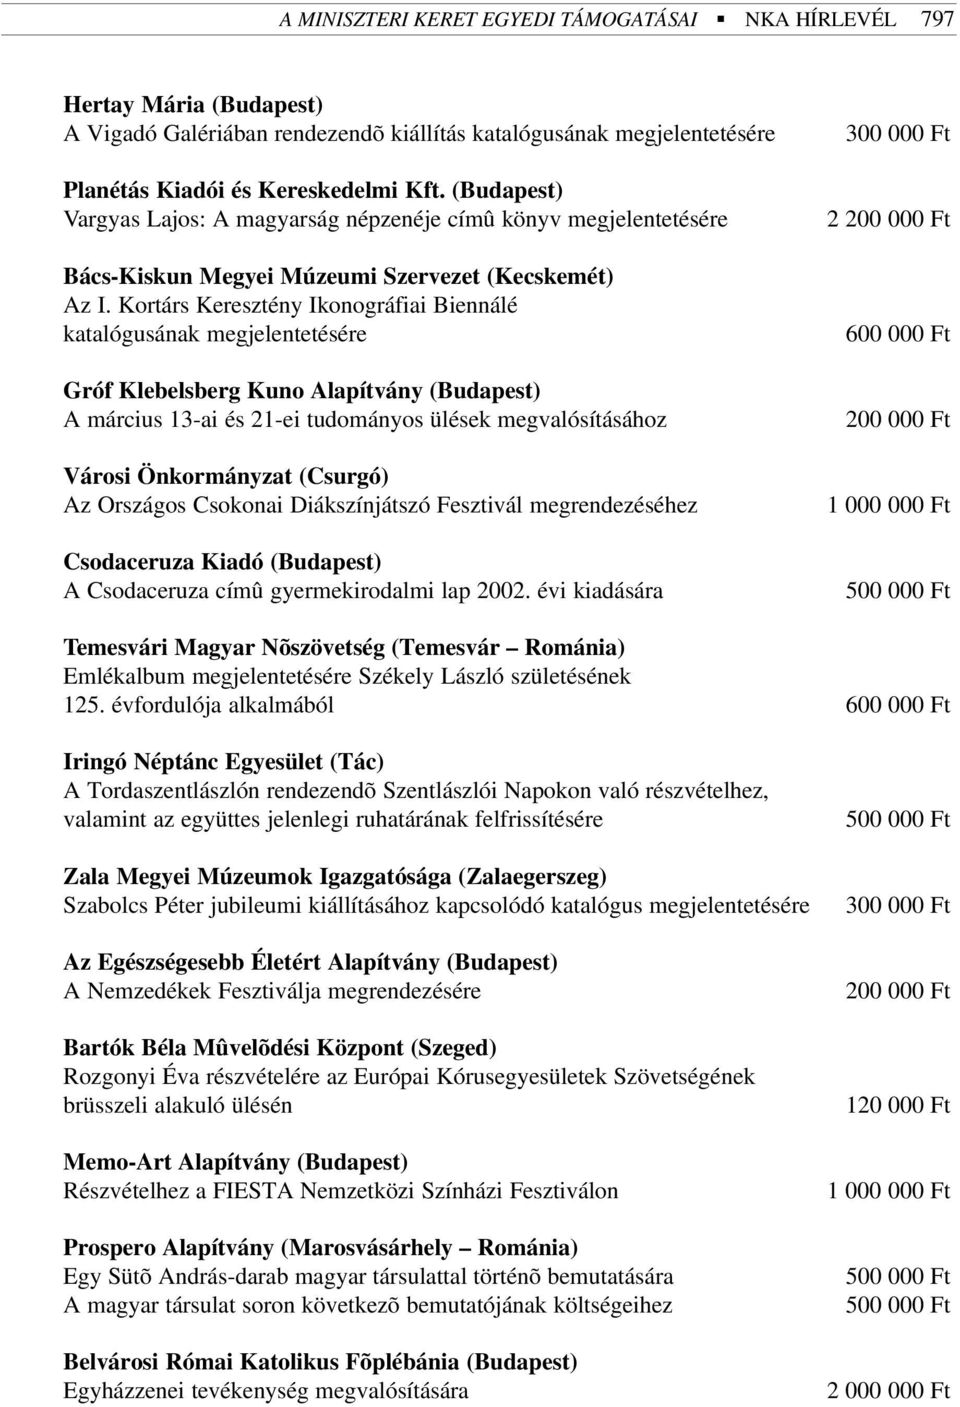 Kortárs Keresztény Ikonográfiai Biennálé katalógusának megjelentetésére Gróf Klebelsberg Kuno Alapítvány (Budapest) A március 13-ai és 21-ei tudományos ülések megvalósításához Városi Önkormányzat